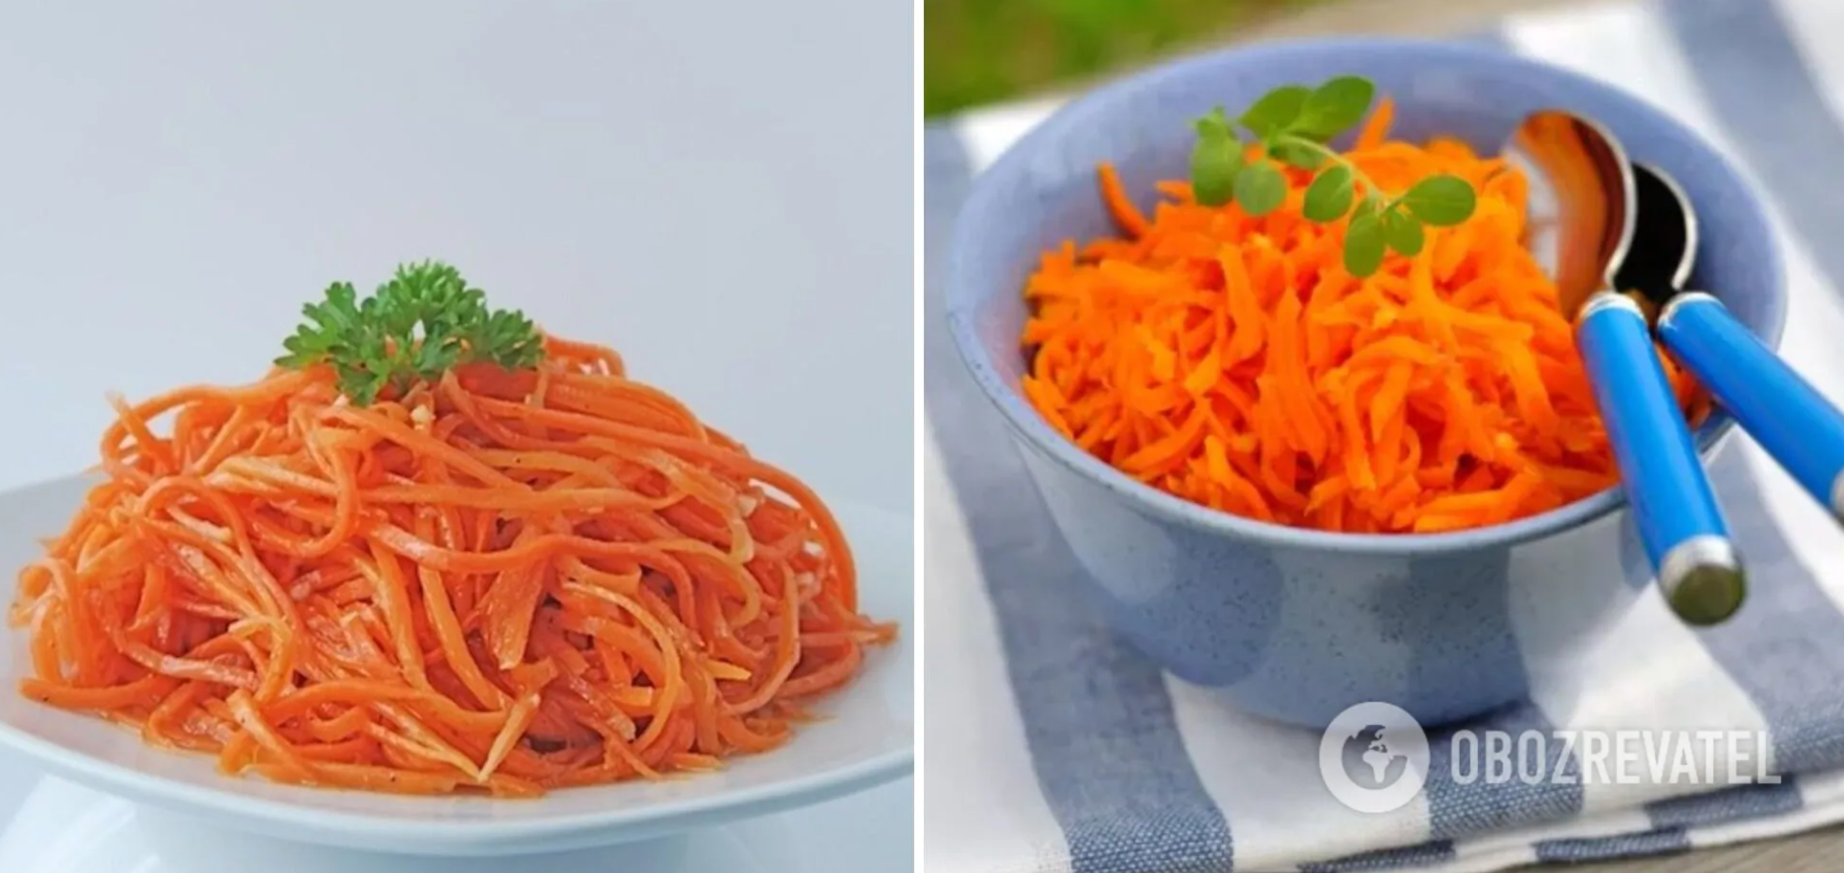 Korean-style homemade carrots